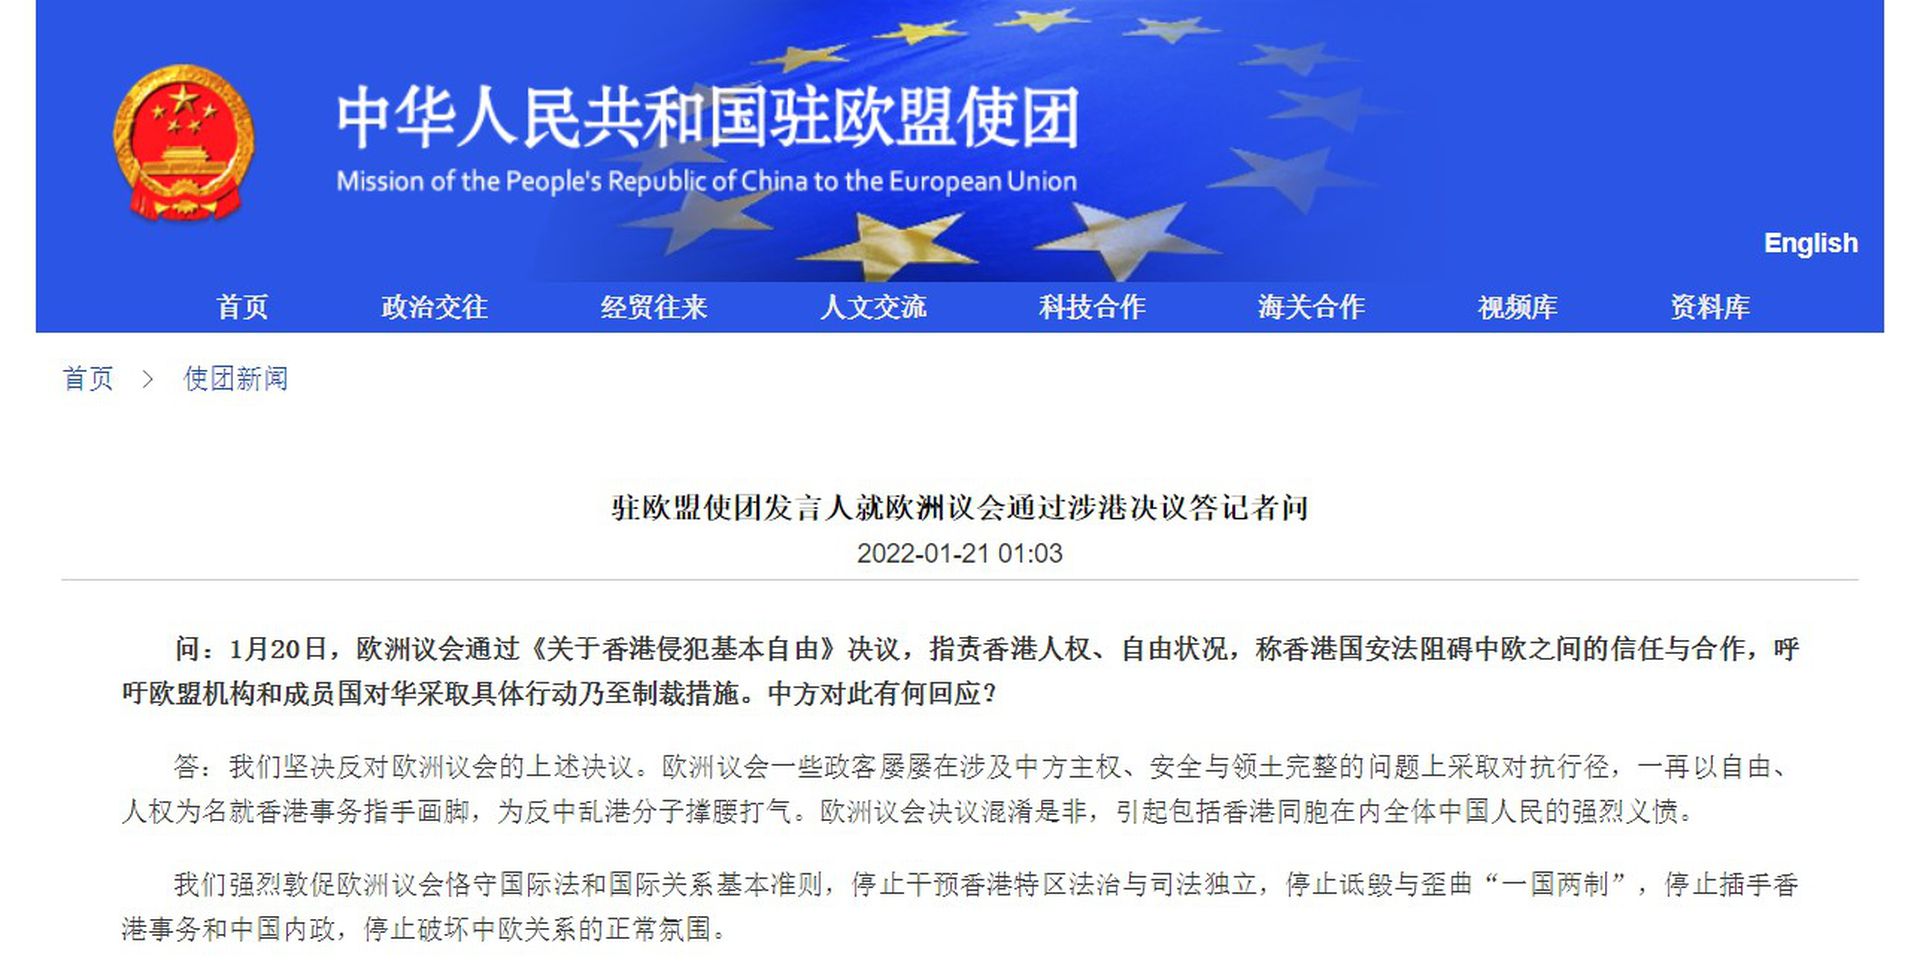 驻欧盟使团发言人1月20日回应欧洲议会通过《关于香港侵犯基本自由》决议一事，称中方坚决反对欧洲议会的上述决议。（中国驻欧盟使团官网截图）